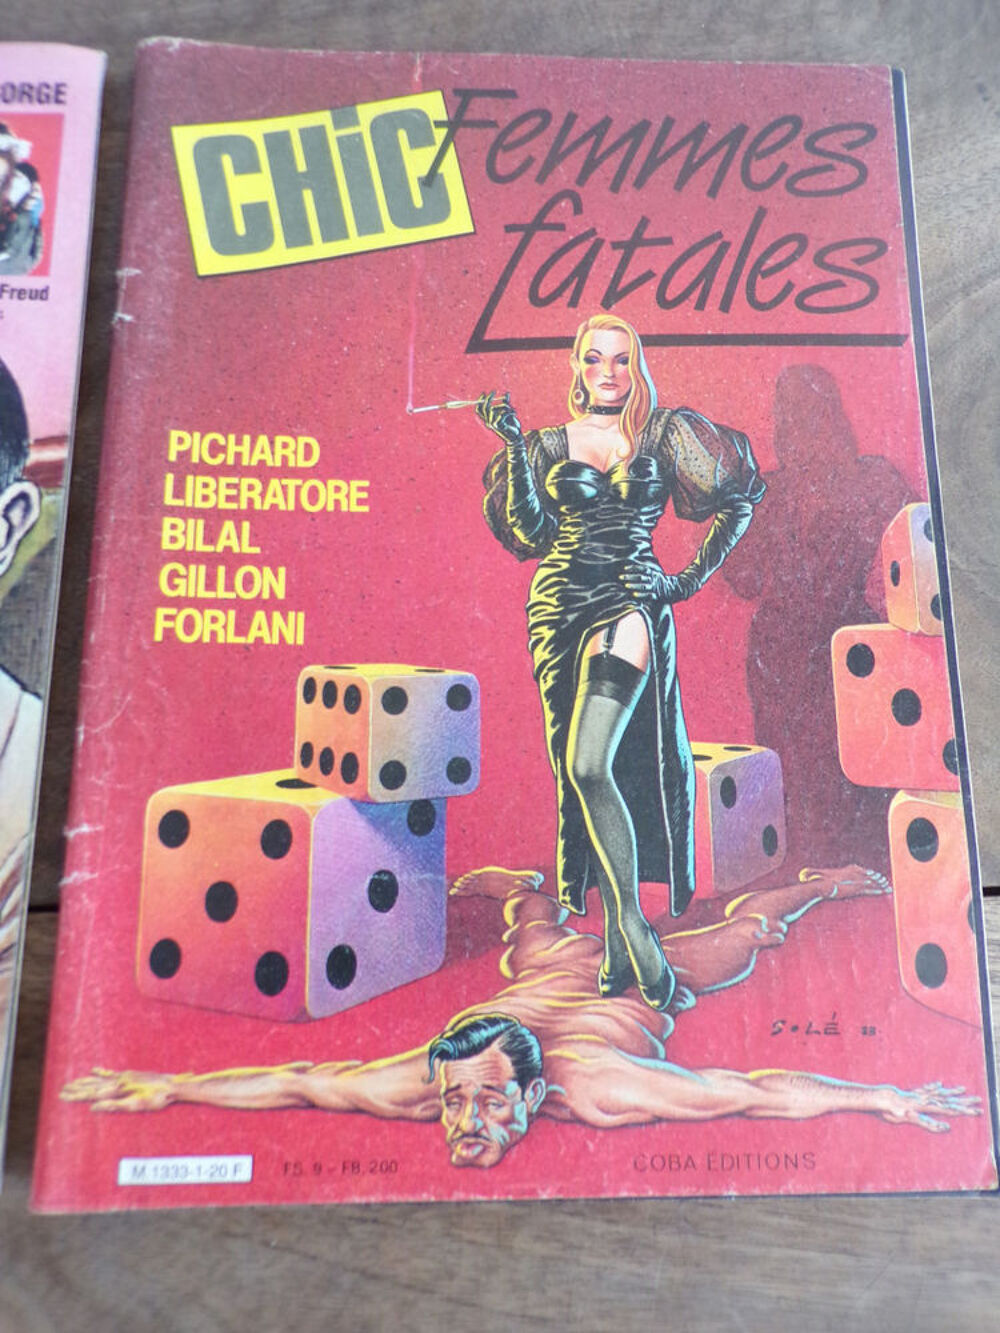 Chic revue femmes fatales janvier 1984 Livres et BD